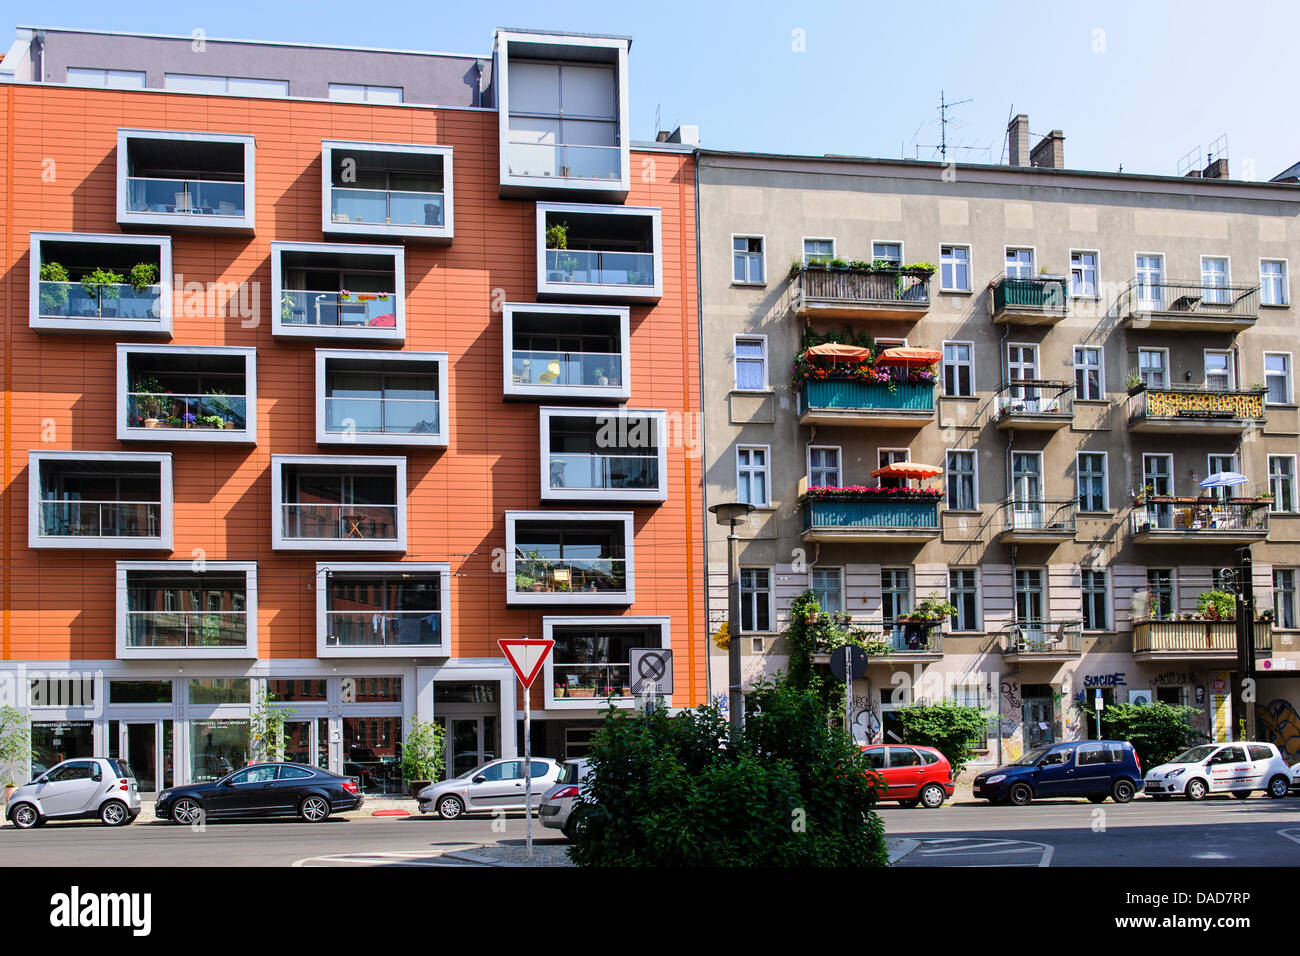 Un nouveau bâtiment de luxe est située à l'angle de la rue Buchholzer Pappelallee / le quartier berlinois de Prenzlauer Berg, à côté d'un ancien bâtiment. Photo : photo alliance / Robert Schlesinger Banque D'Images